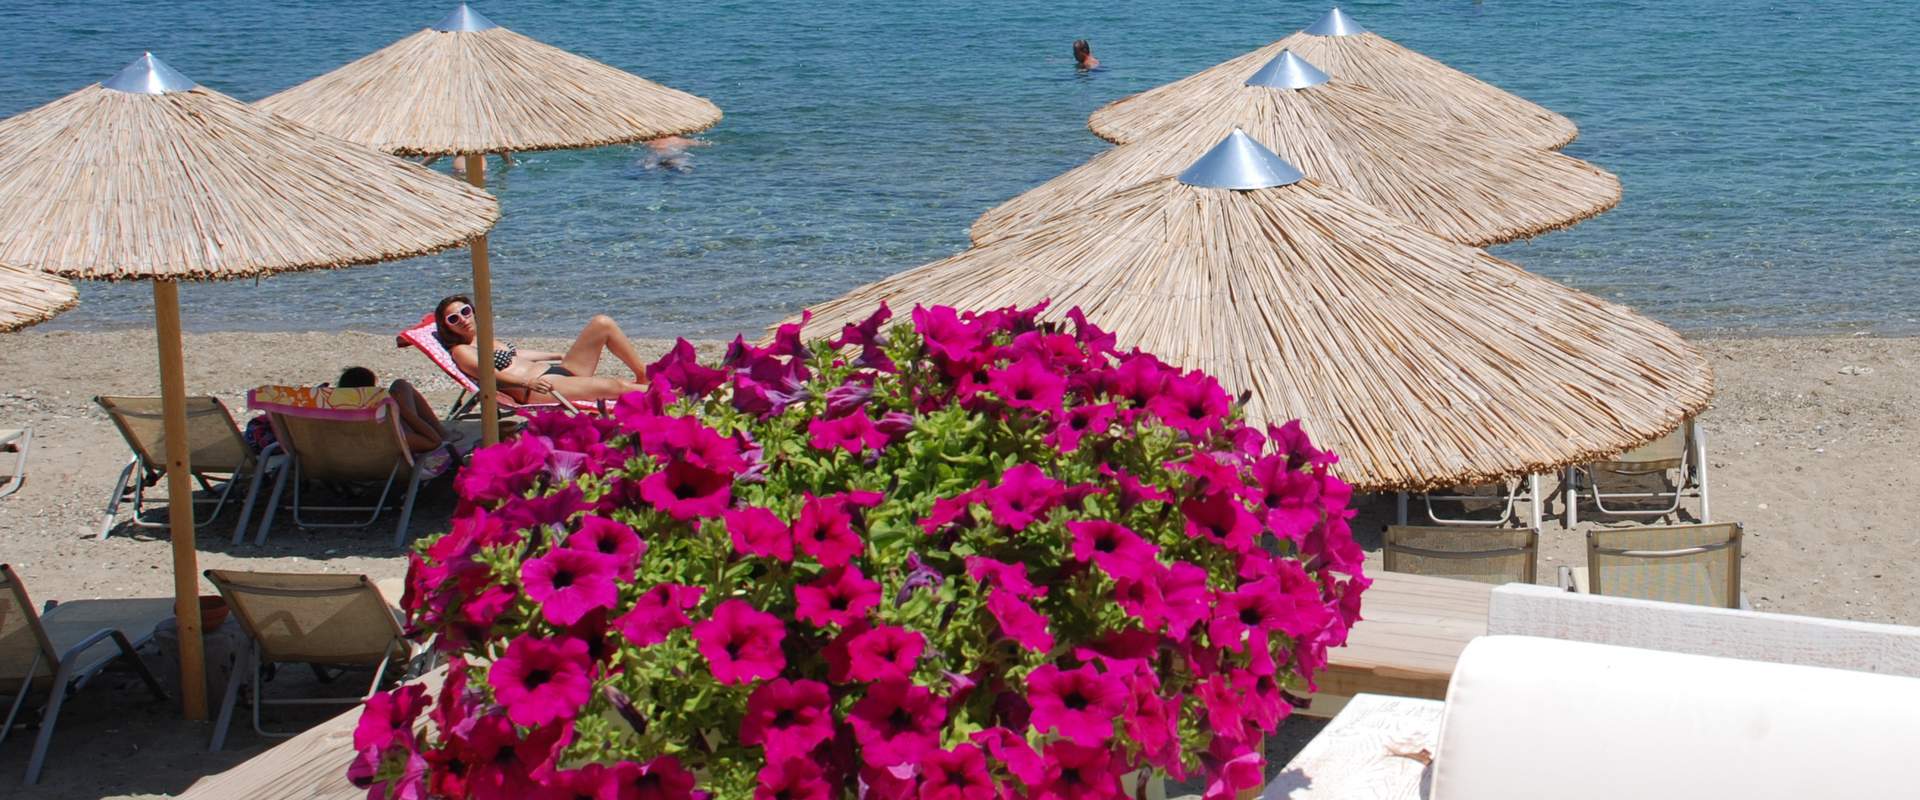 Παναγιά παραλία (Ναυαγός), Κασσάνδρα, Χαλκιδική, Ελλάδα